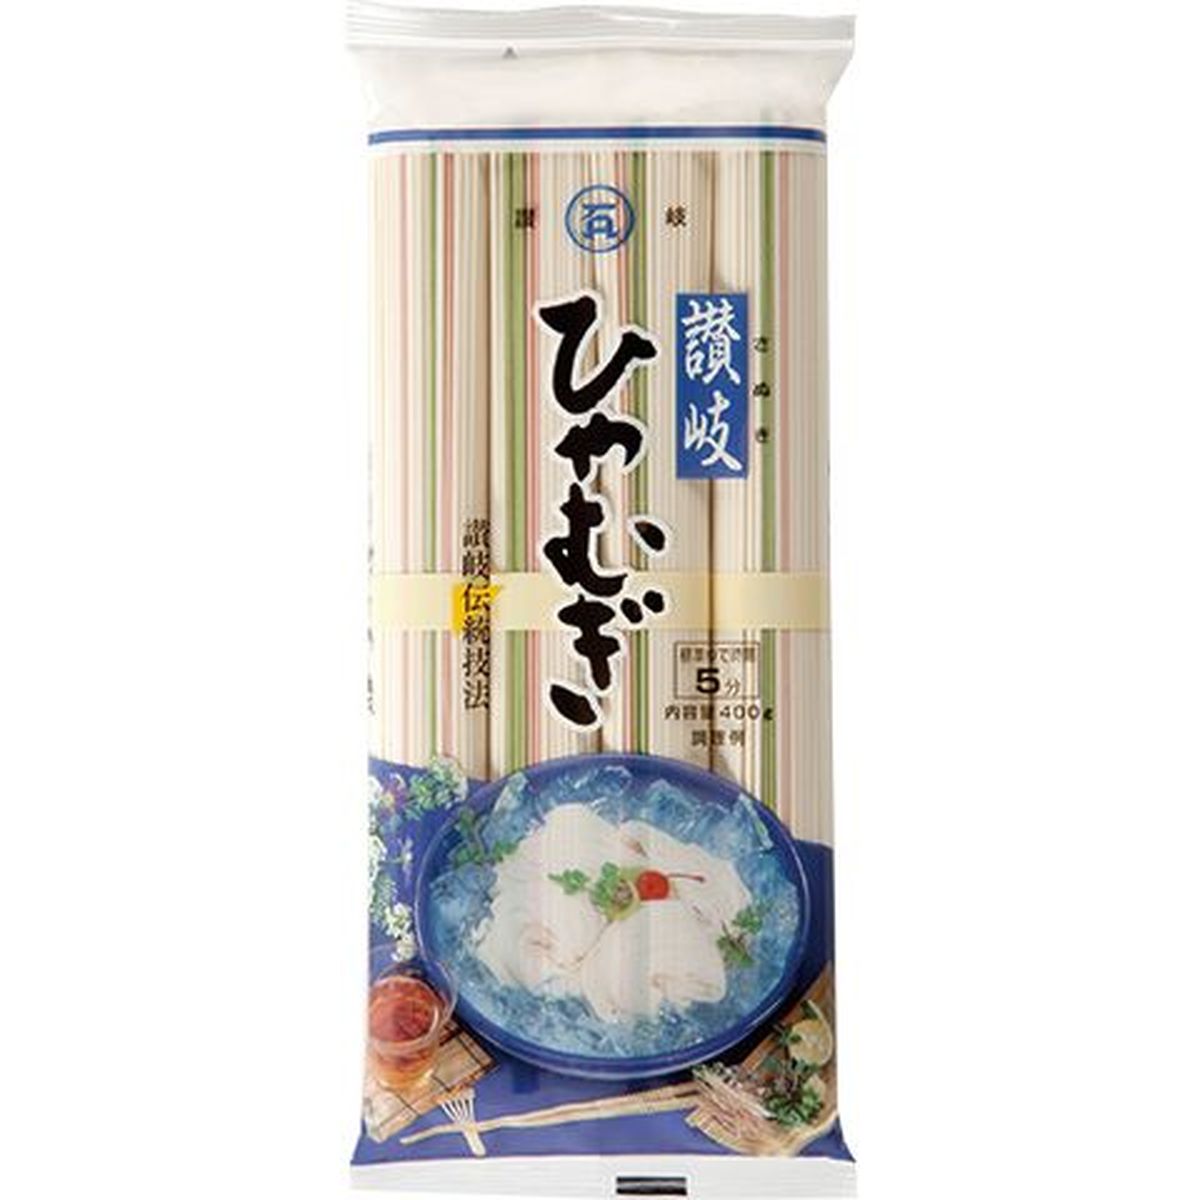 【20個入リ】石丸製麺 讃岐 ヒヤムギ 400g